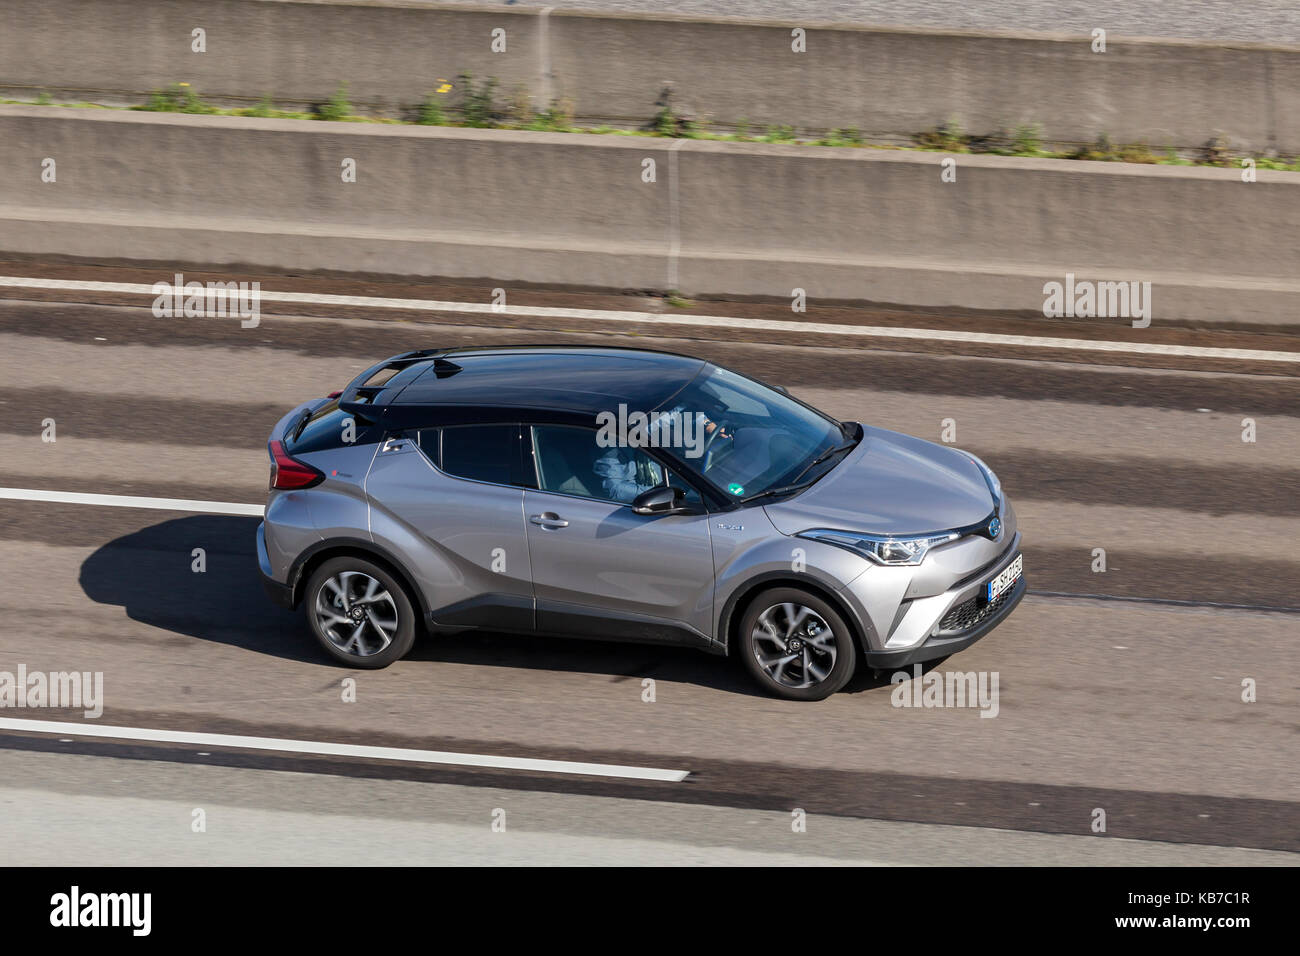 Frankfurt, Deutschland - 19.09.2017: Toyota c-hr-hybrid Kleinwagen Crossover-SUV auf der Autobahn in Deutschland fahren Stockfoto